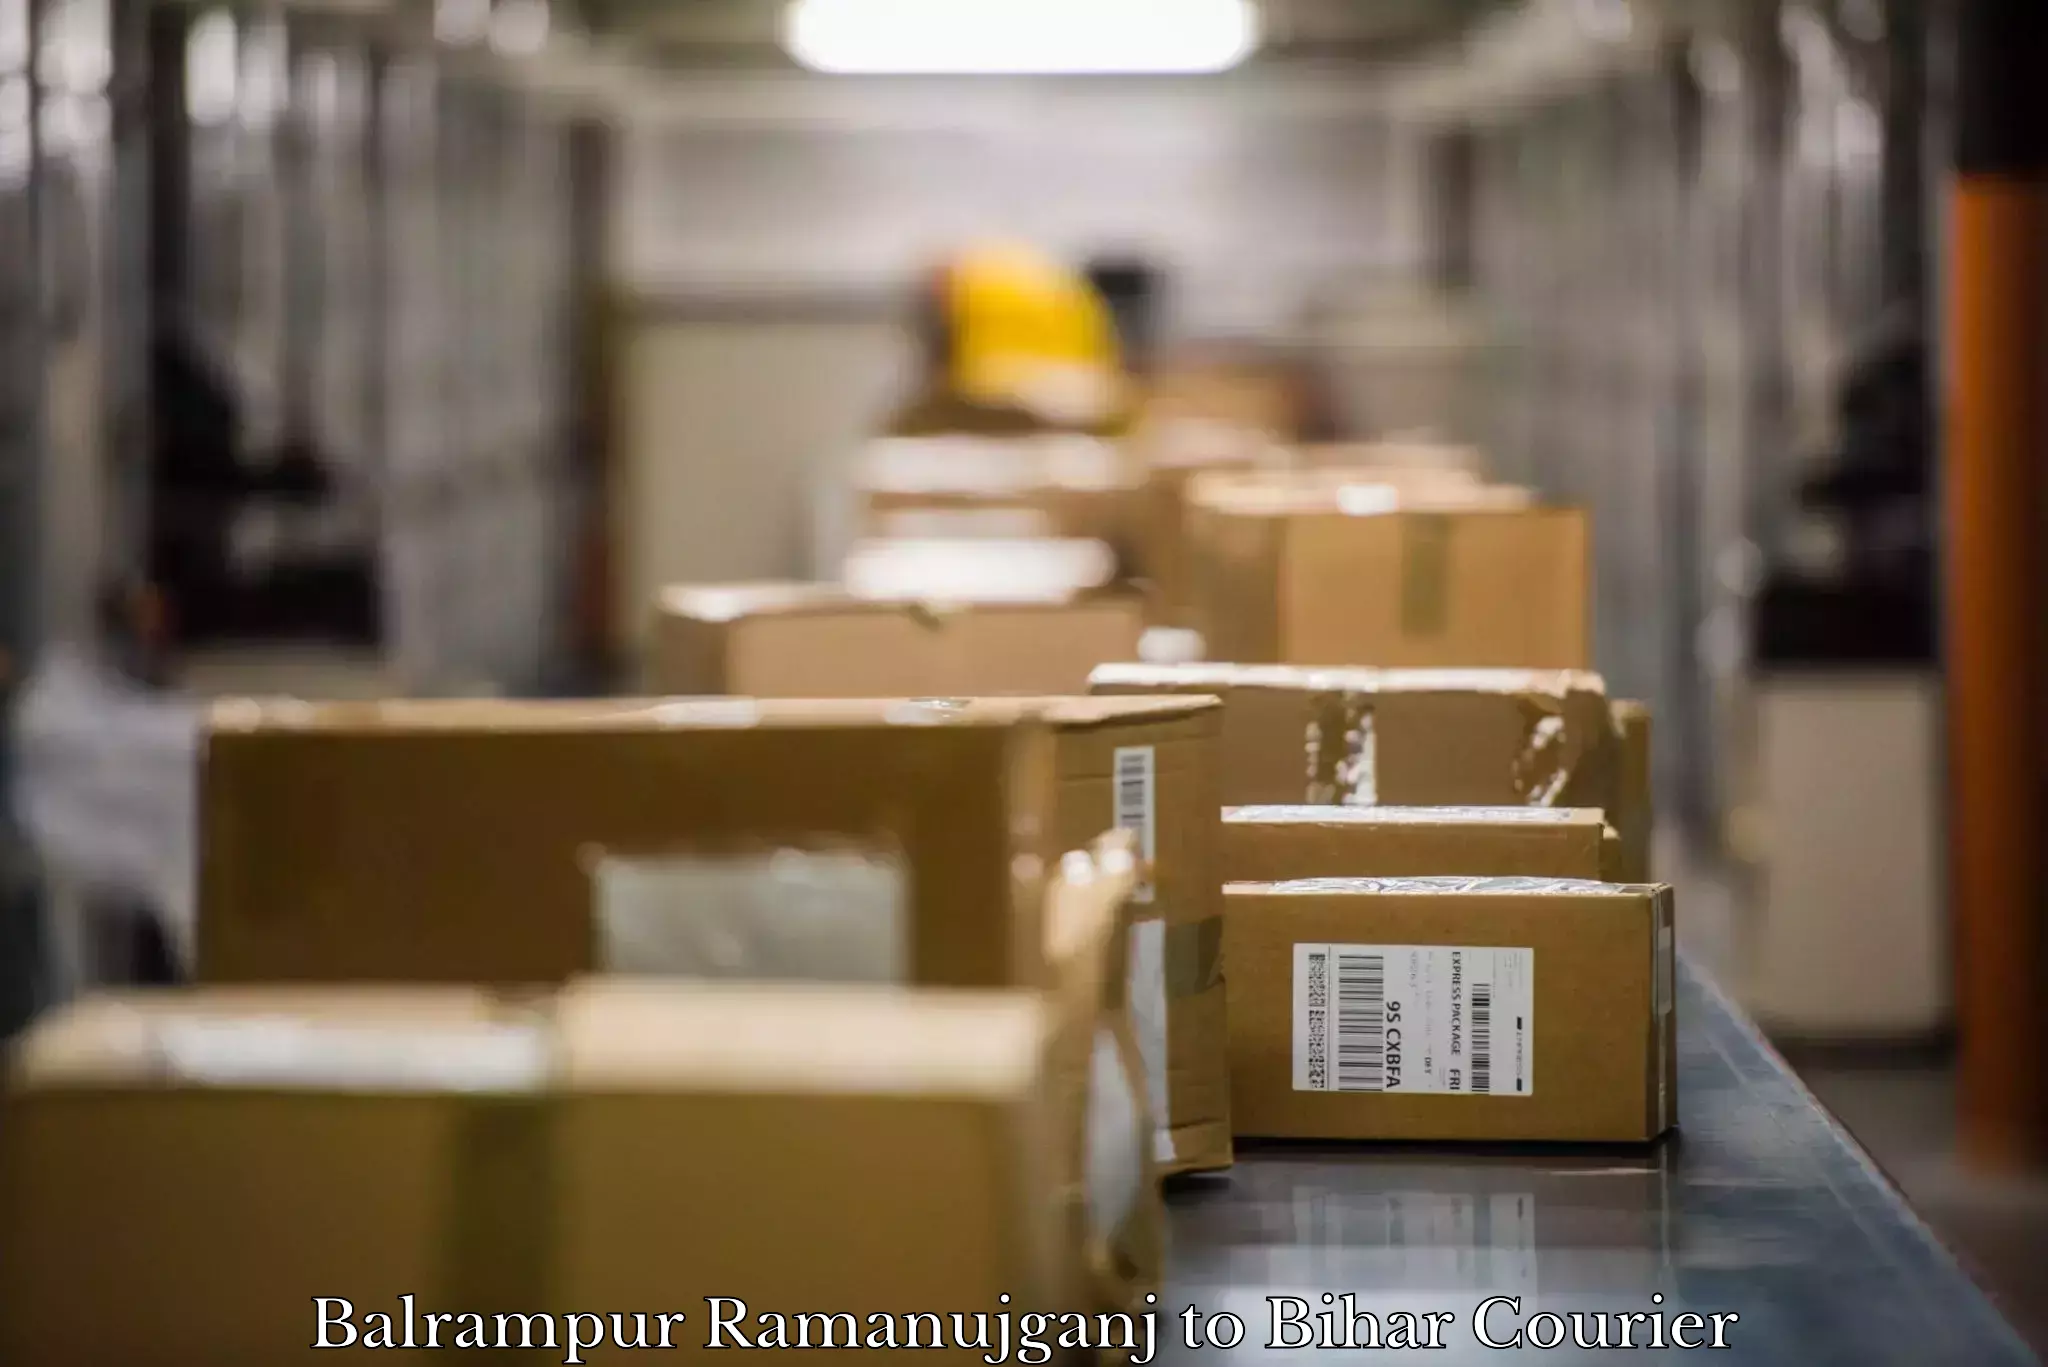 Furniture logistics Balrampur Ramanujganj to Motipur